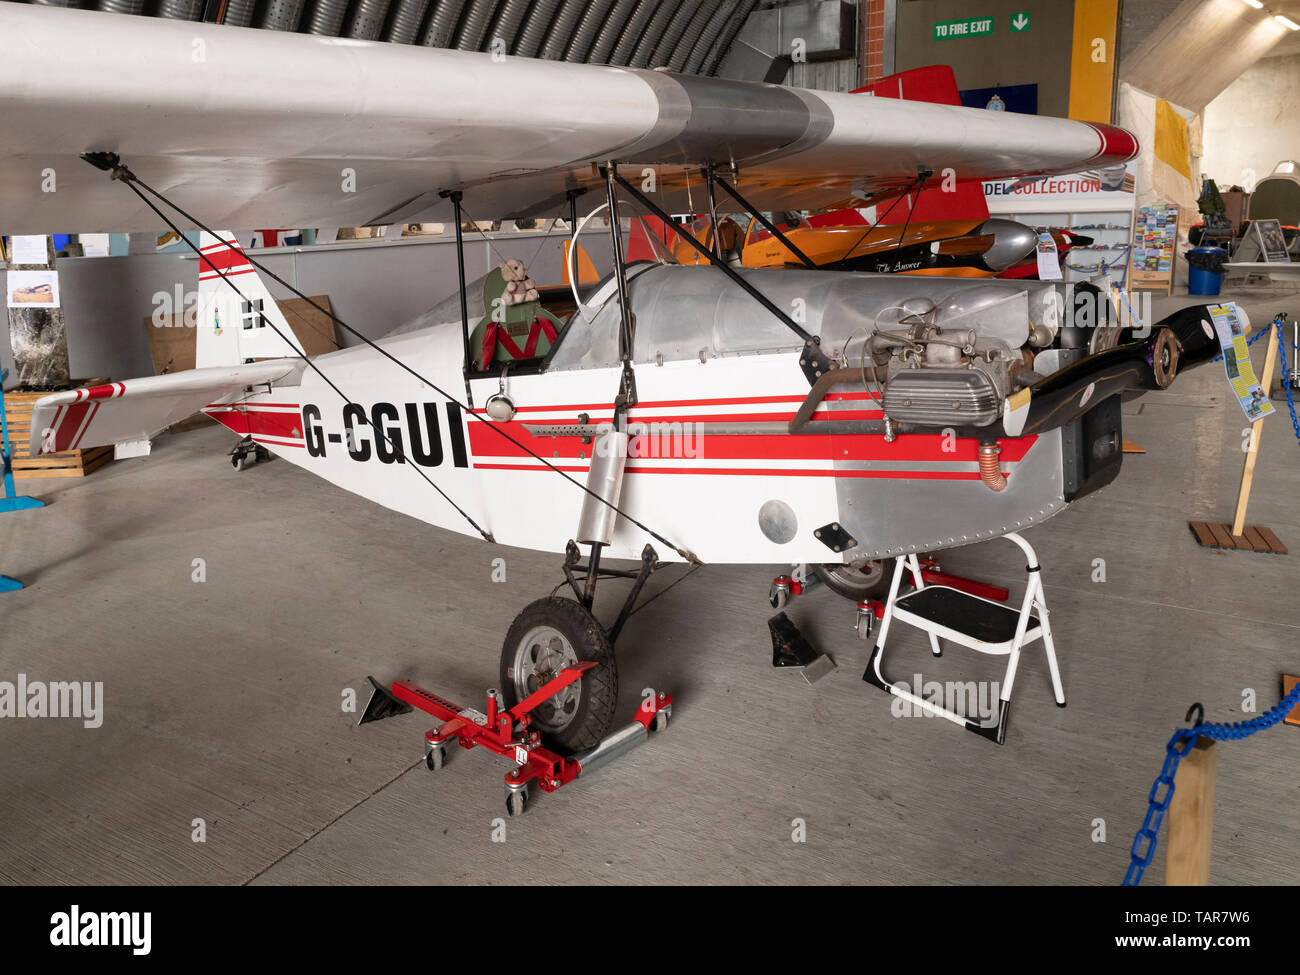 Hangar Exhibit, G-CGUI Stockfoto